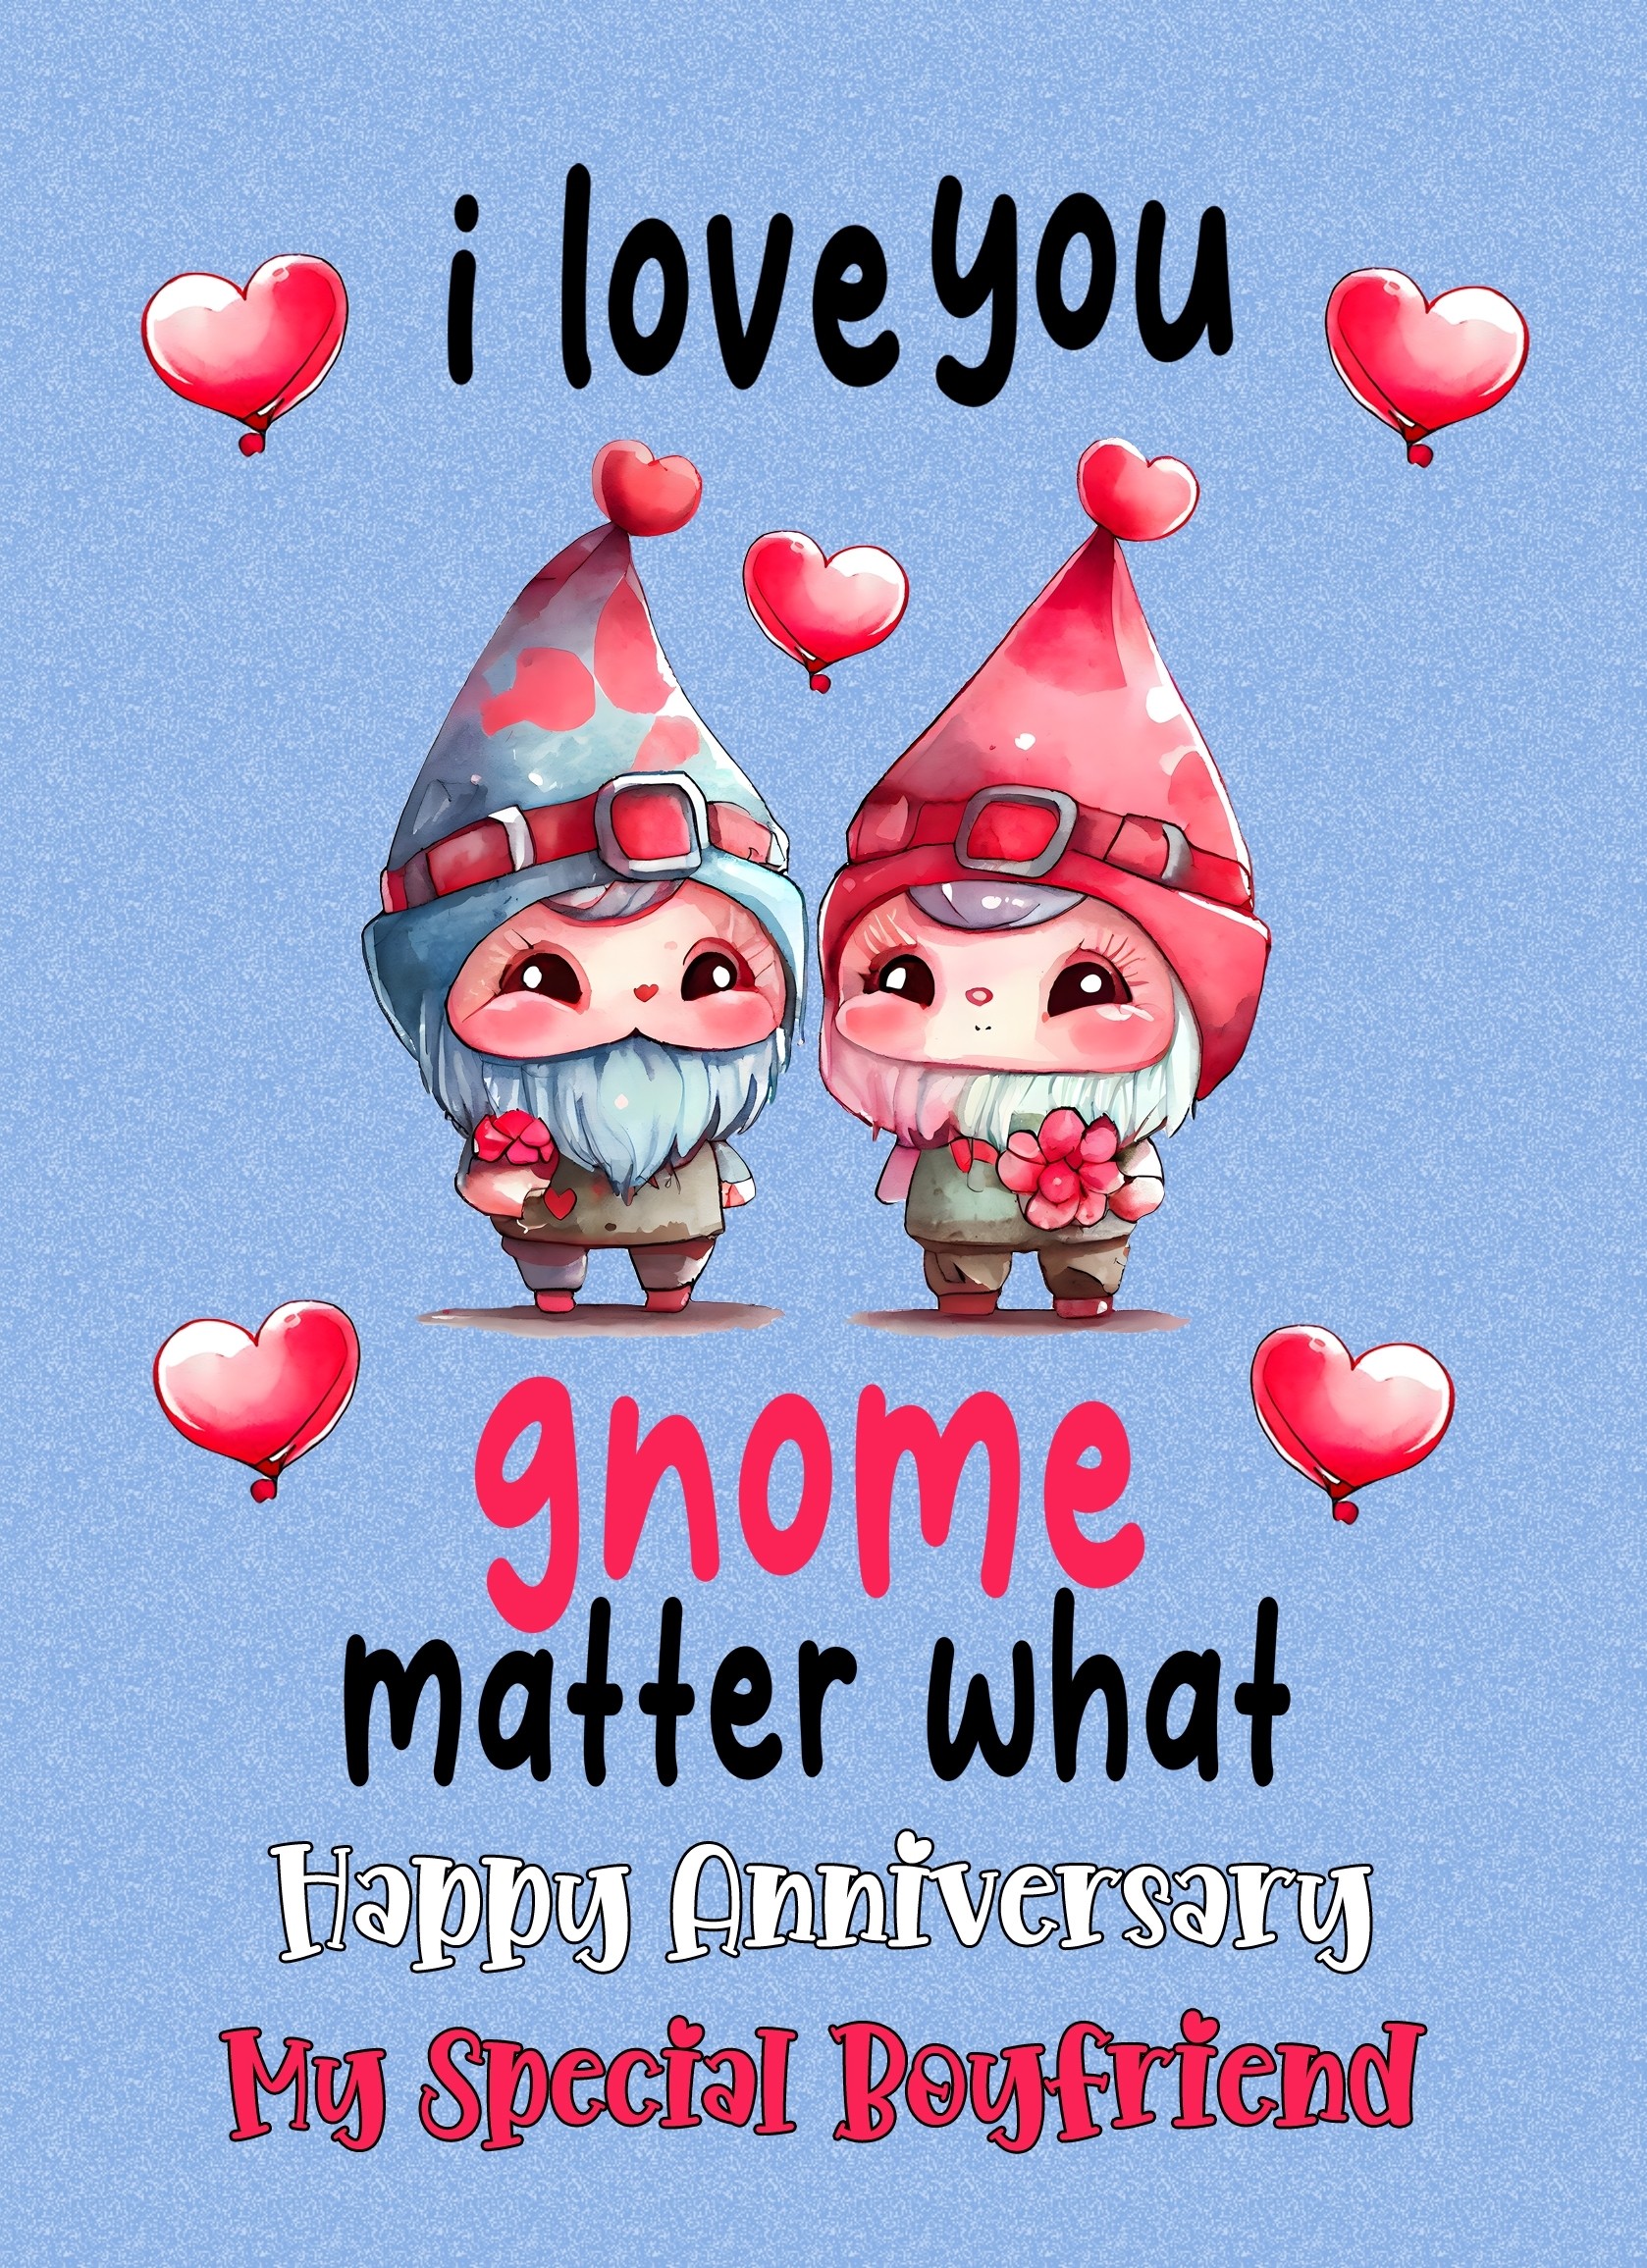 Funny Pun Romantic Anniversary Card for Boyfriend (Gnome Matter)